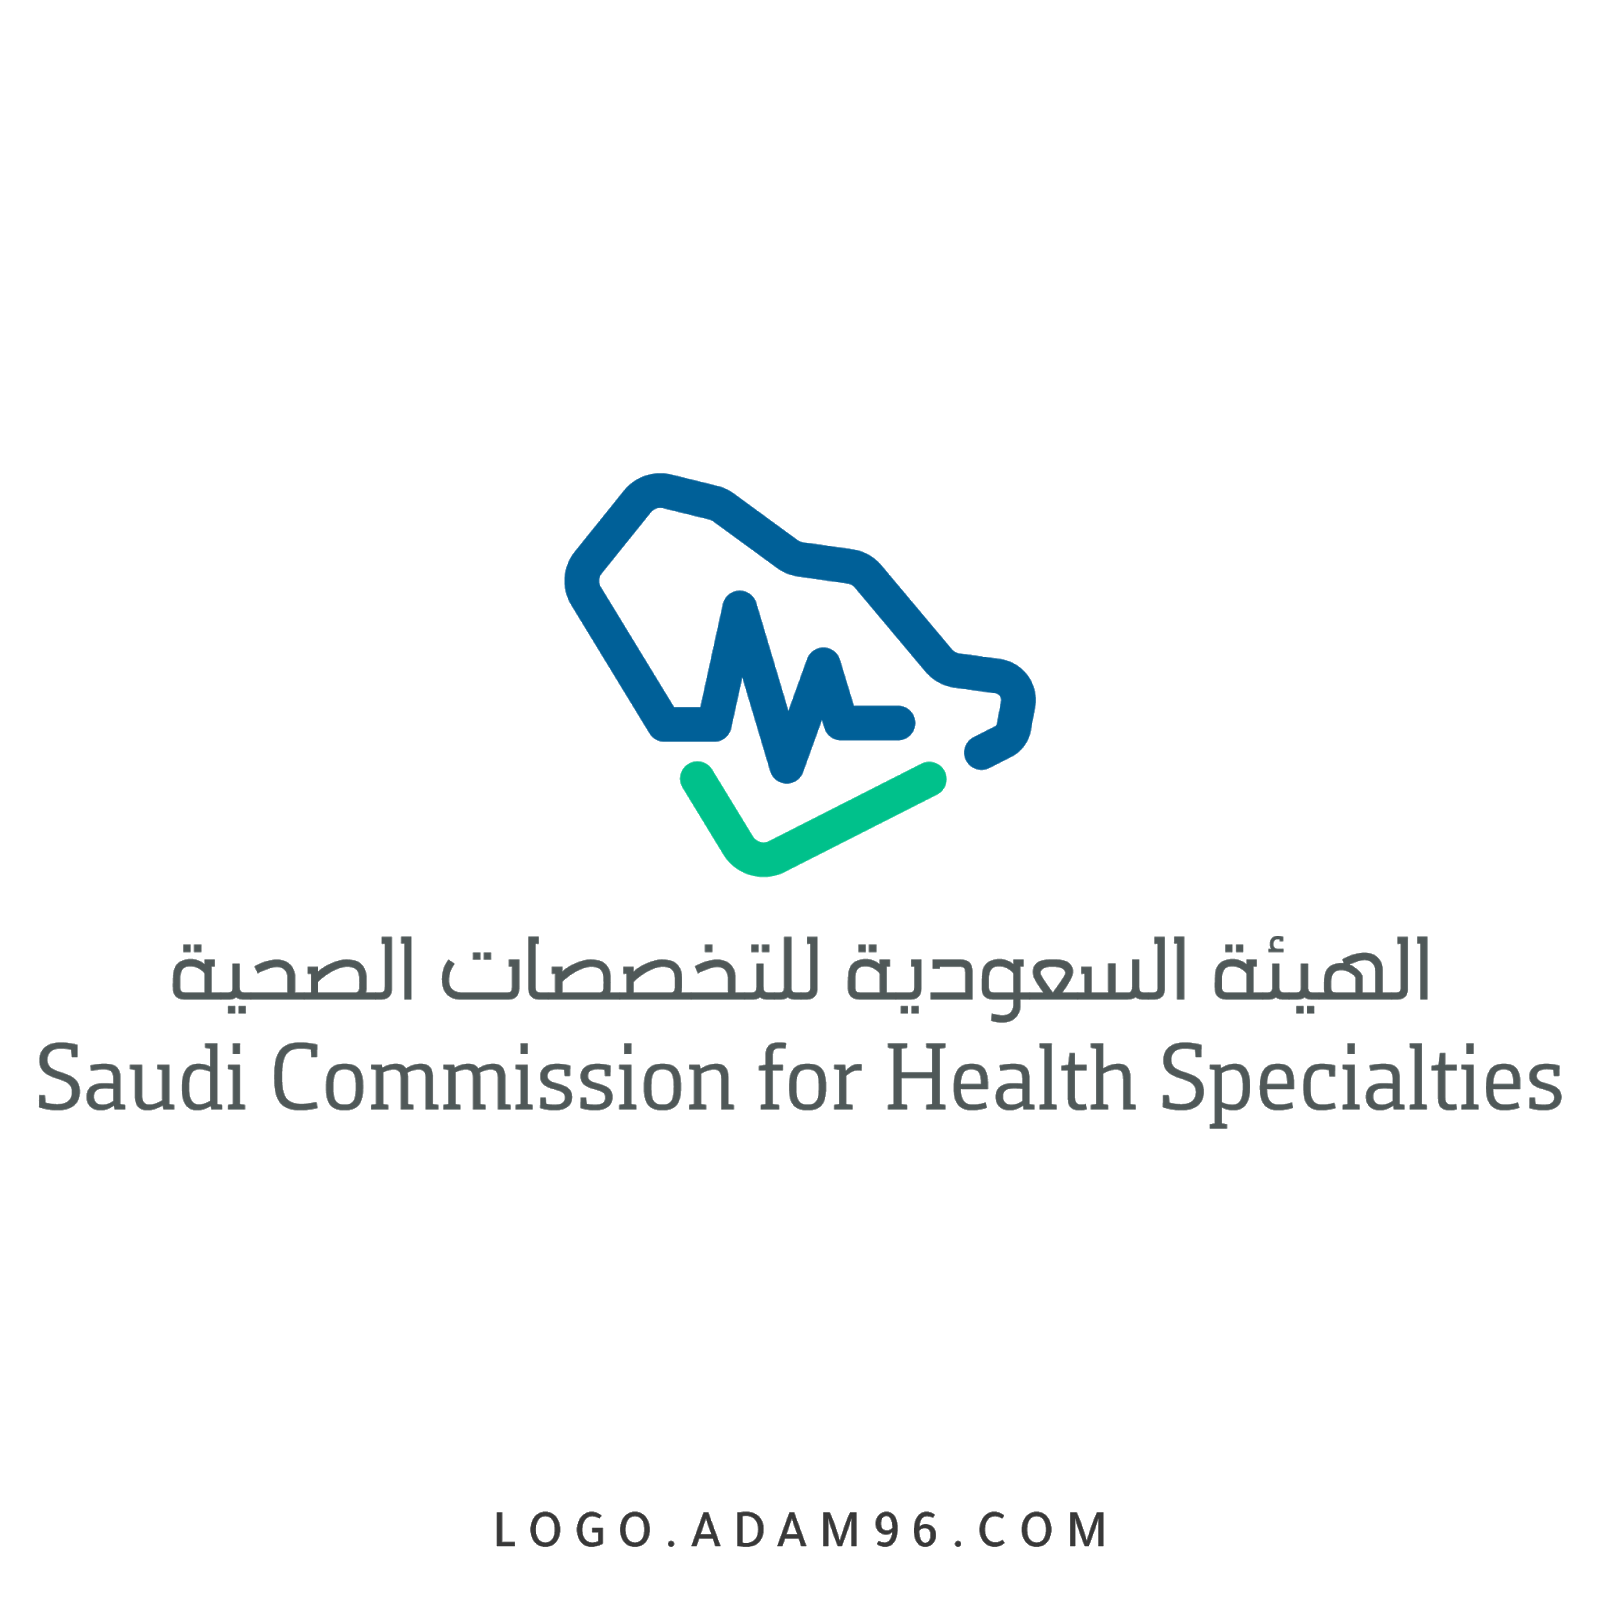 رقم هيئة التخصصات الصحية السعودية الموحد واتساب المجانى 1444